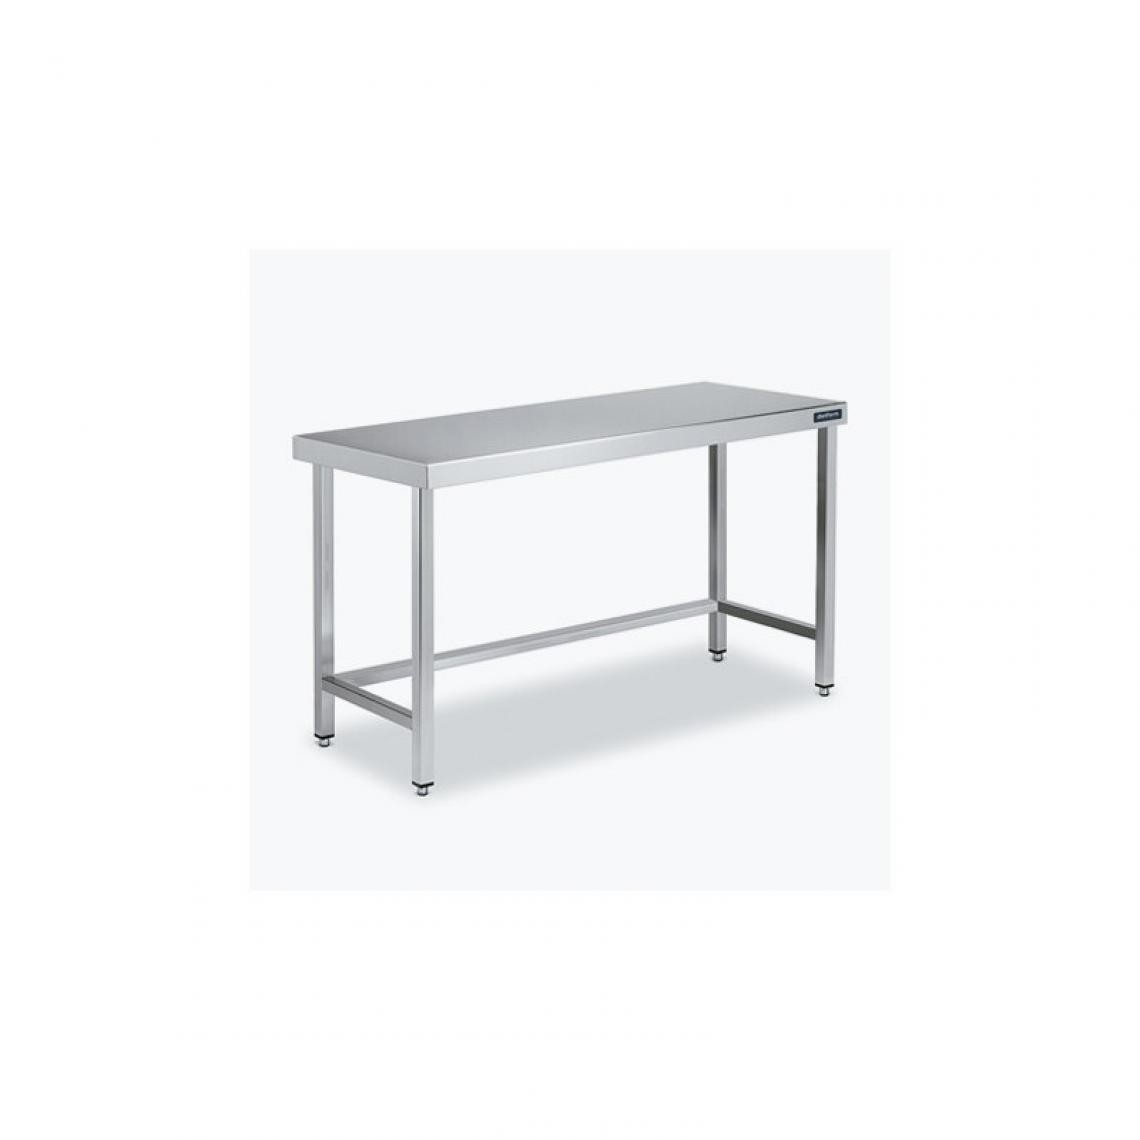 DISTFORM - Table Centrale 600x500 avec Renforts - Distform - Inox 18/101400x500x850mm - Tables à manger